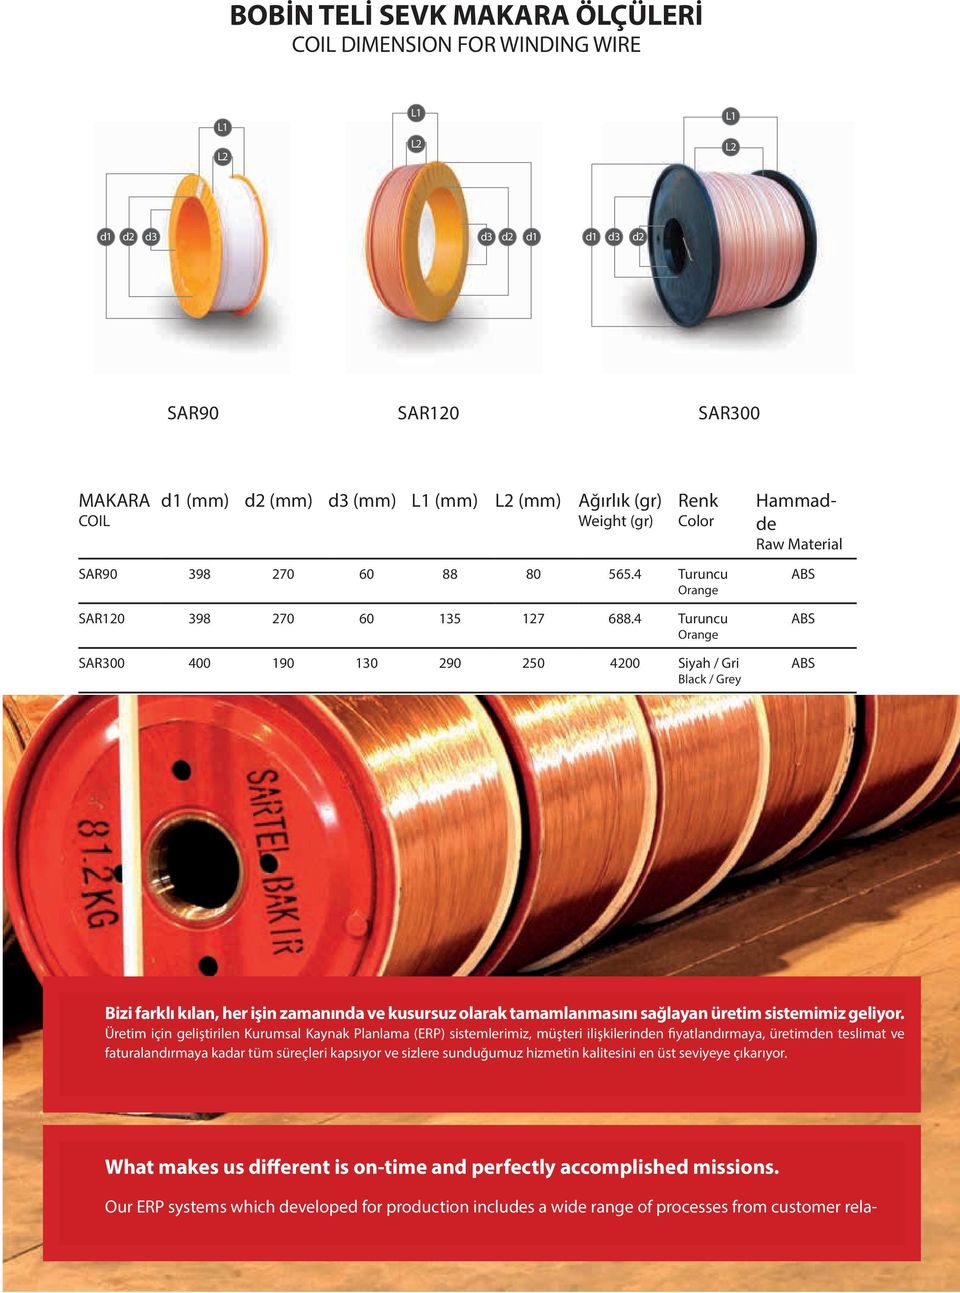 4 Turuncu Orange SAR300 400 190 130 290 250 4200 Siyah / Gri Black / Grey Hammadde Raw Material ABS ABS ABS Bizi farklı kılan, her işin zamanında ve kusursuz olarak tamamlanmasını sağlayan üretim